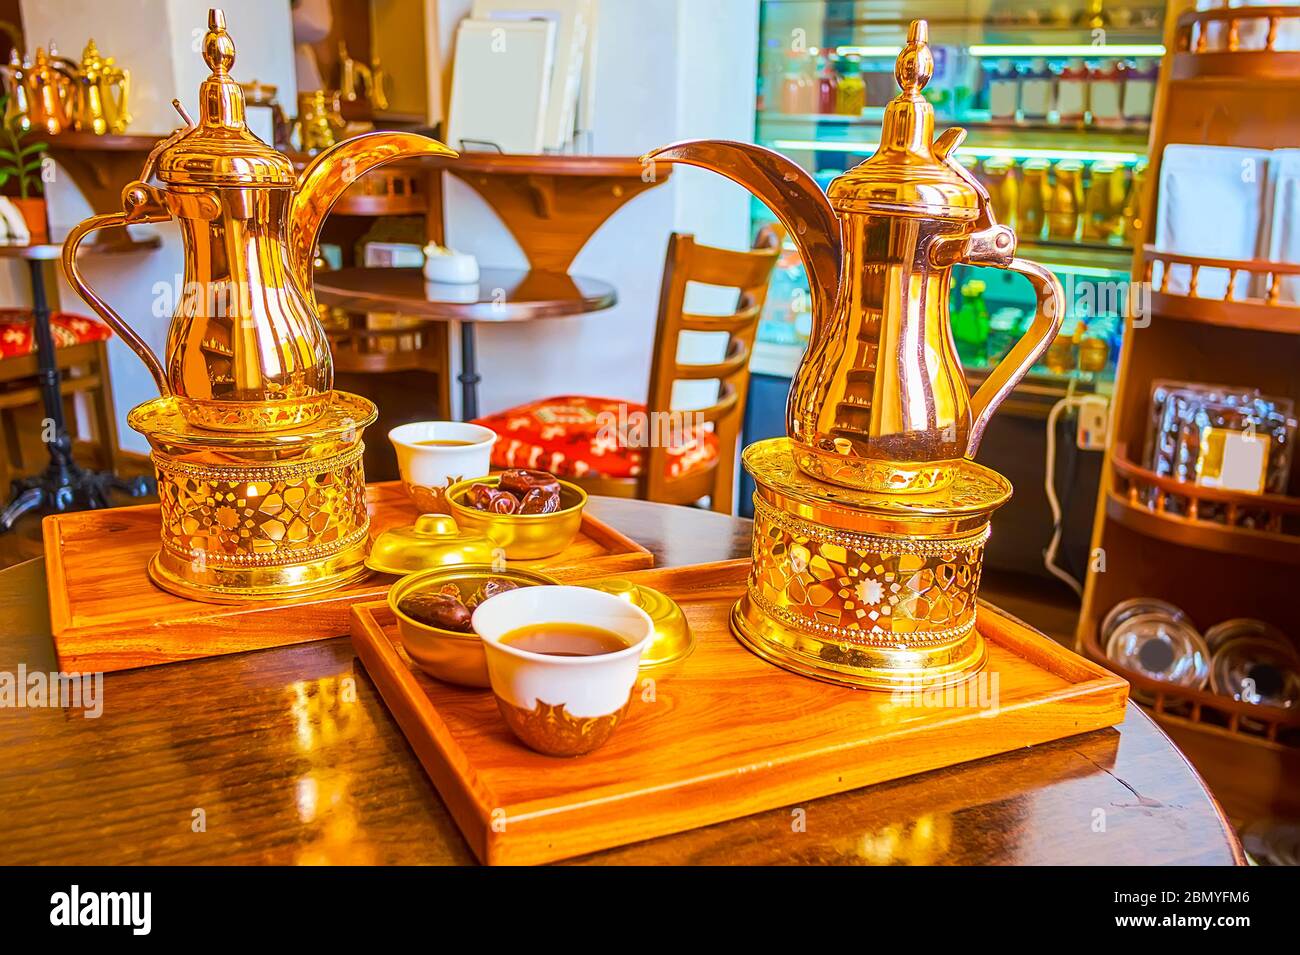 Dégustez un délicieux café arabe qahwa, préparé dans une cafetière en laiton dallah aux herbes et épices, Dubaï, Émirats arabes Unis Banque D'Images